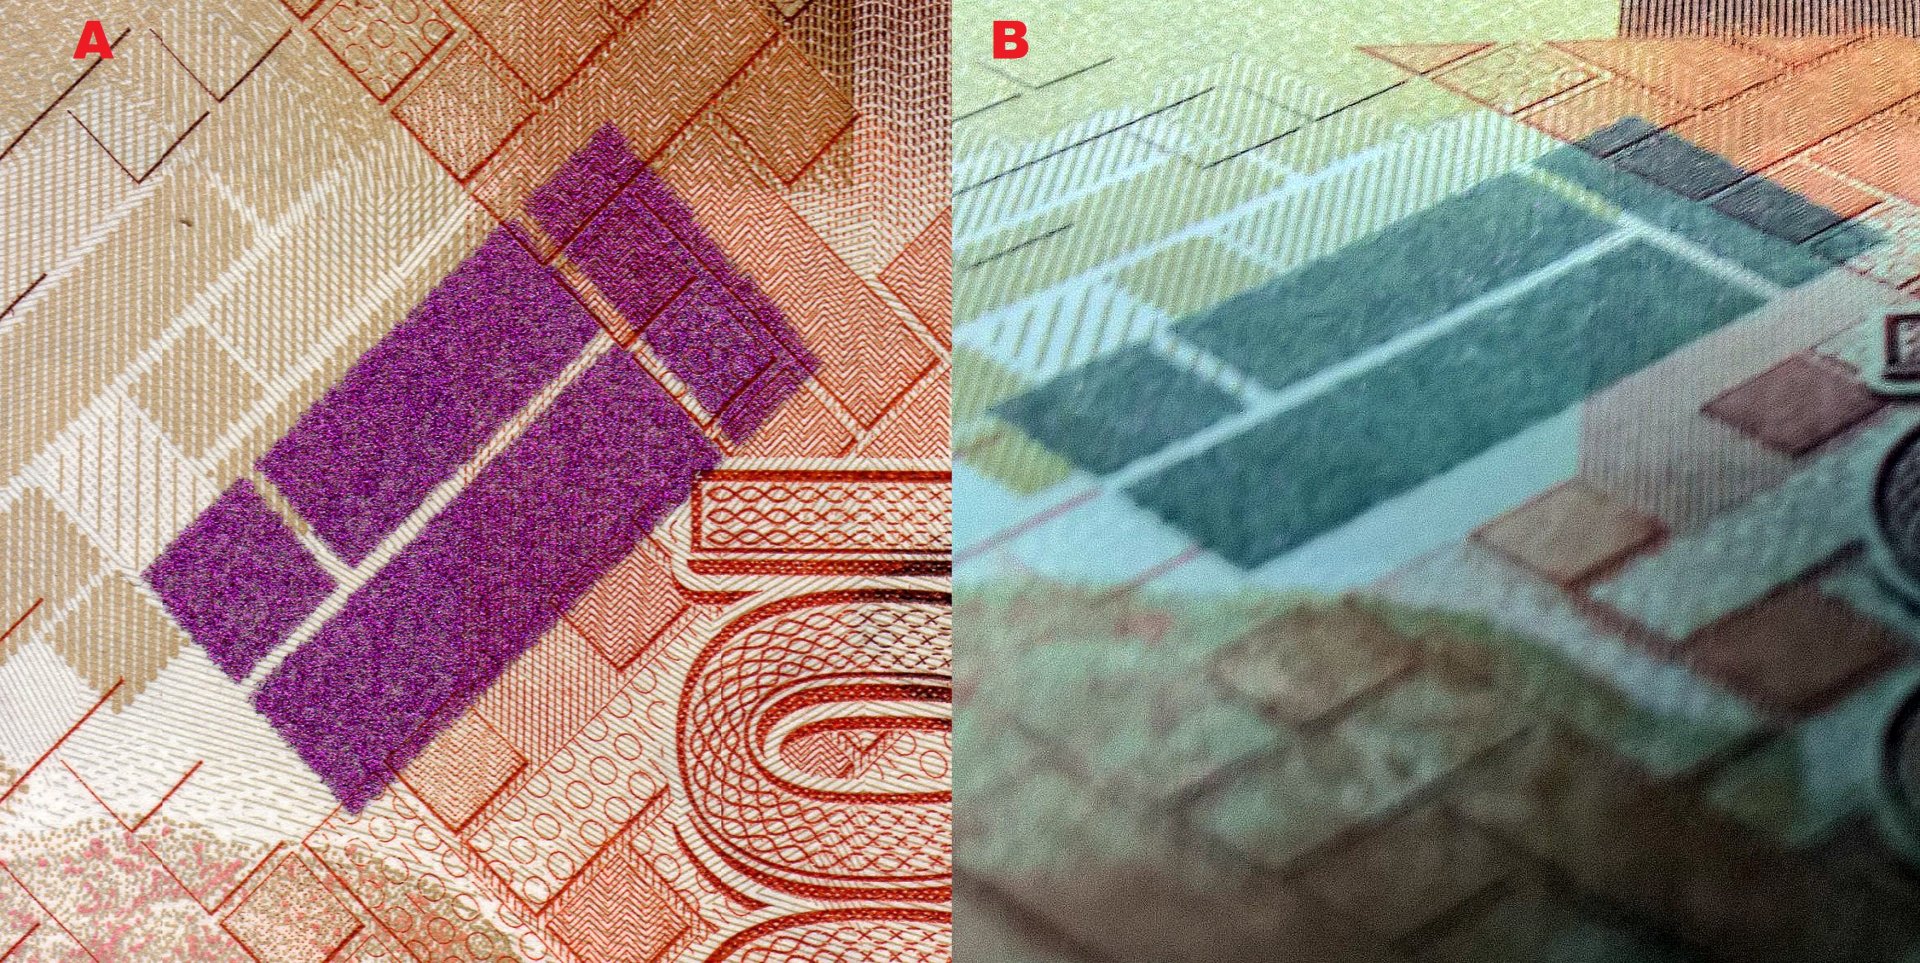 Obrázek 3 A) Pole vytvořené technologií OVI při kolmém pozorování B) Při pozorování pod úhlem 45° je zachycena změna barvy z fialové na tmavě zelenou.